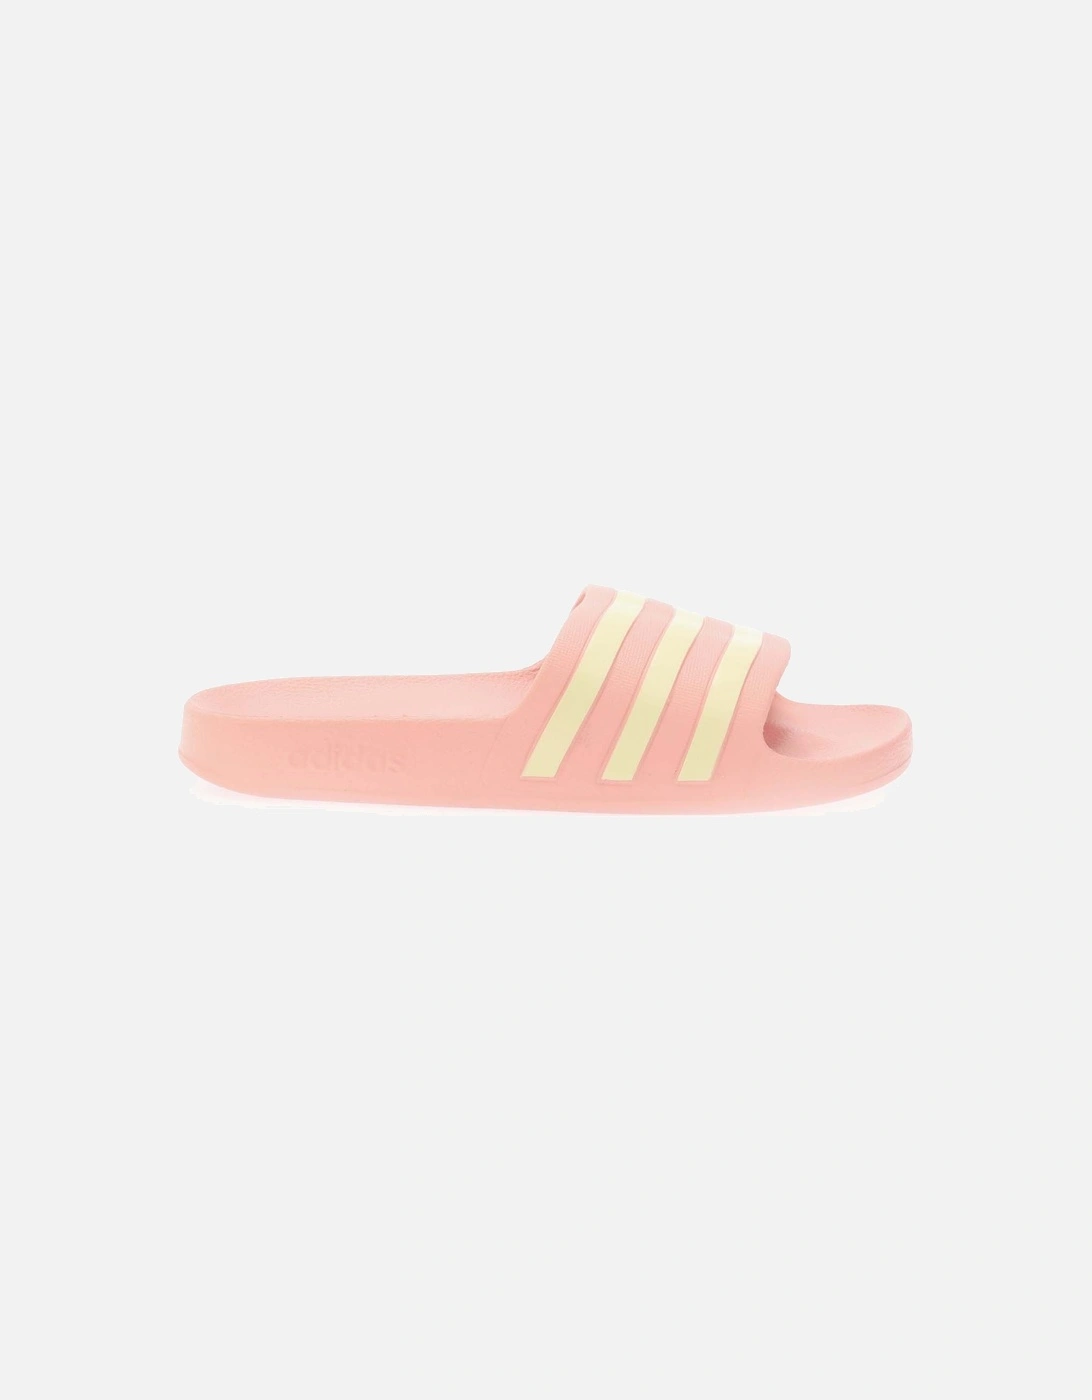 Womens Adilette Aqua Slide Sandals